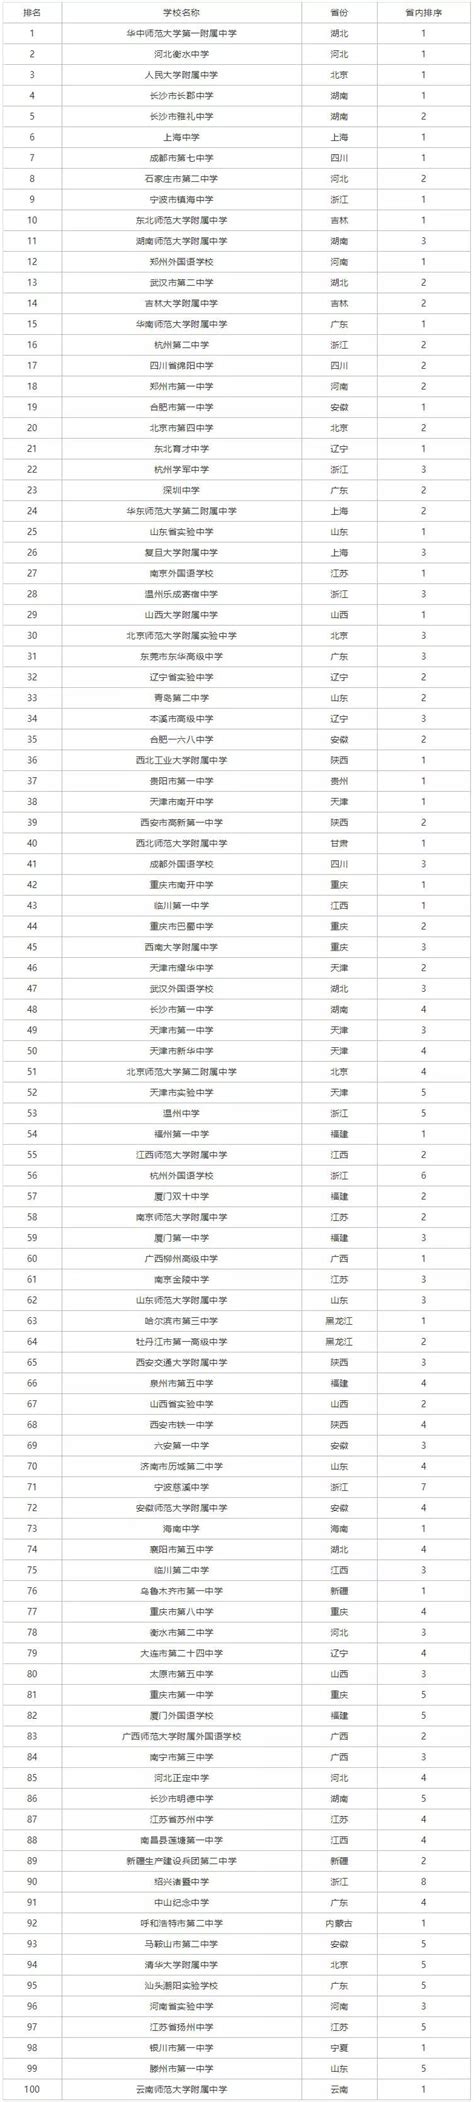 2022年河南最好的高中排名,河南省重点高中名单及排名 - 知乎